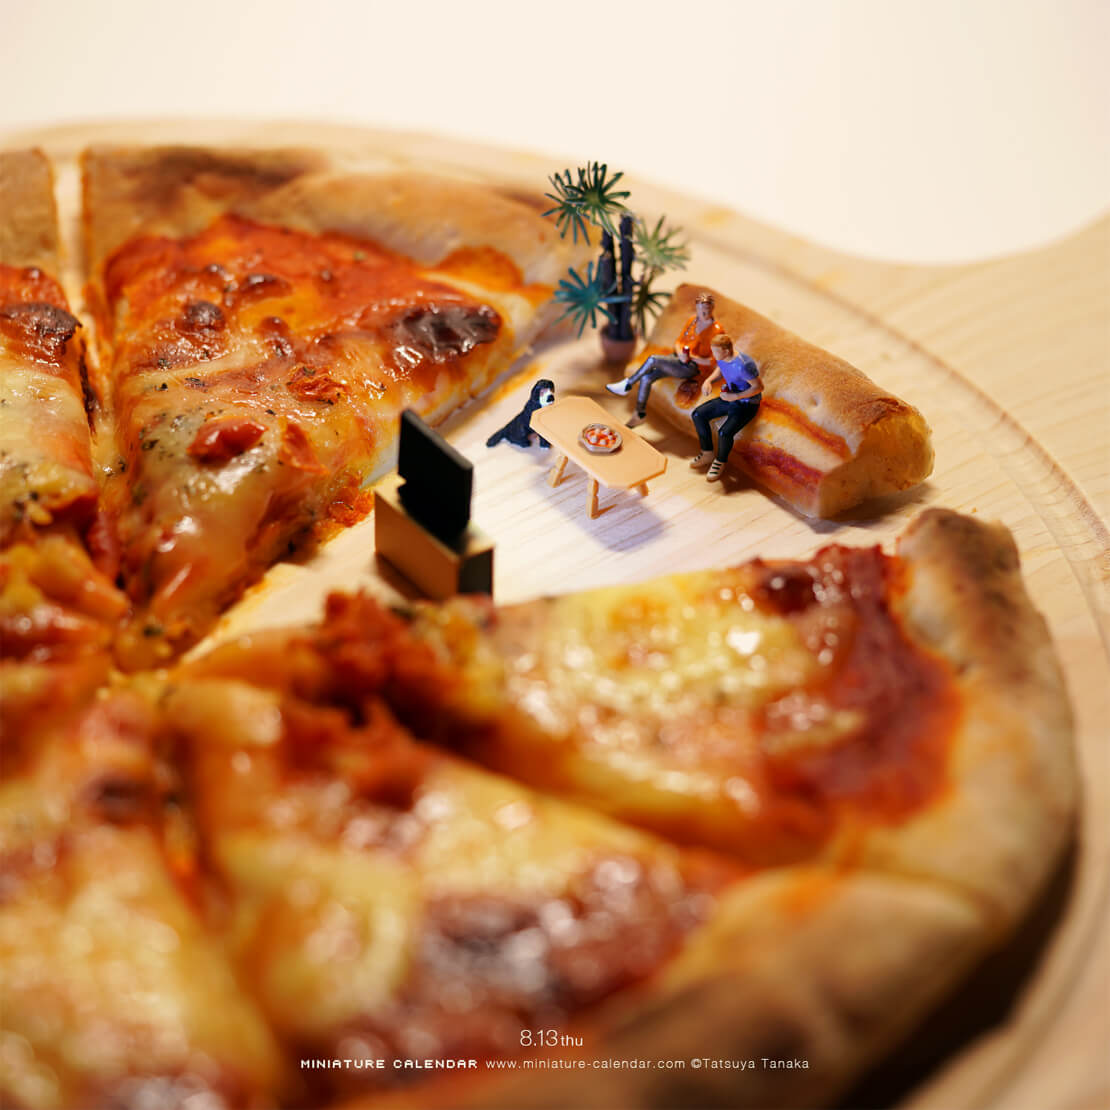 Miniature Art Pizza mit Sofa